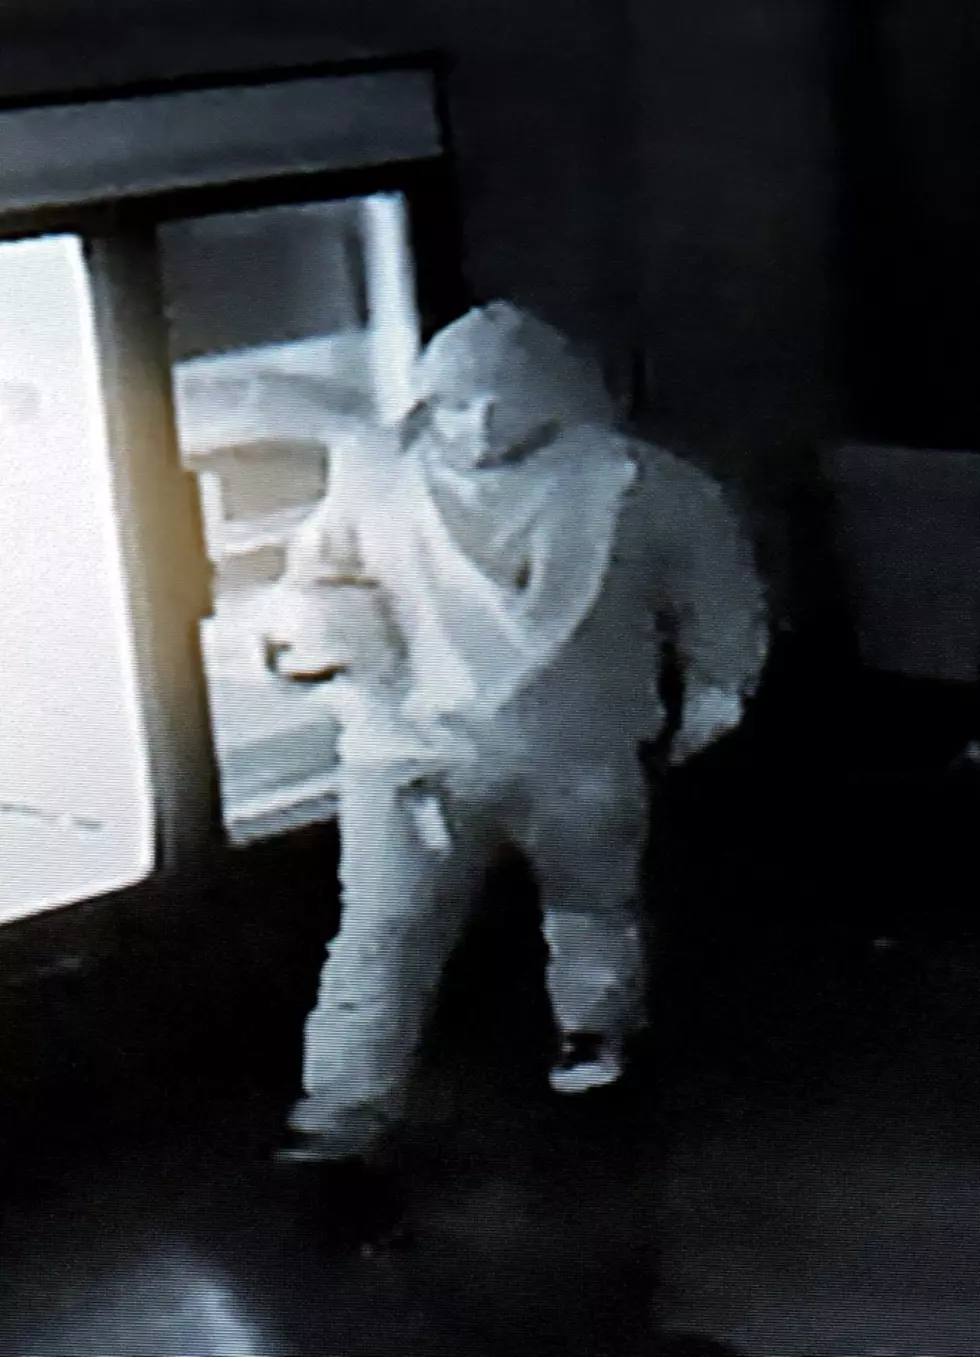 ‘Phantom Burglar’ Strikes Again, This Time at Bakery